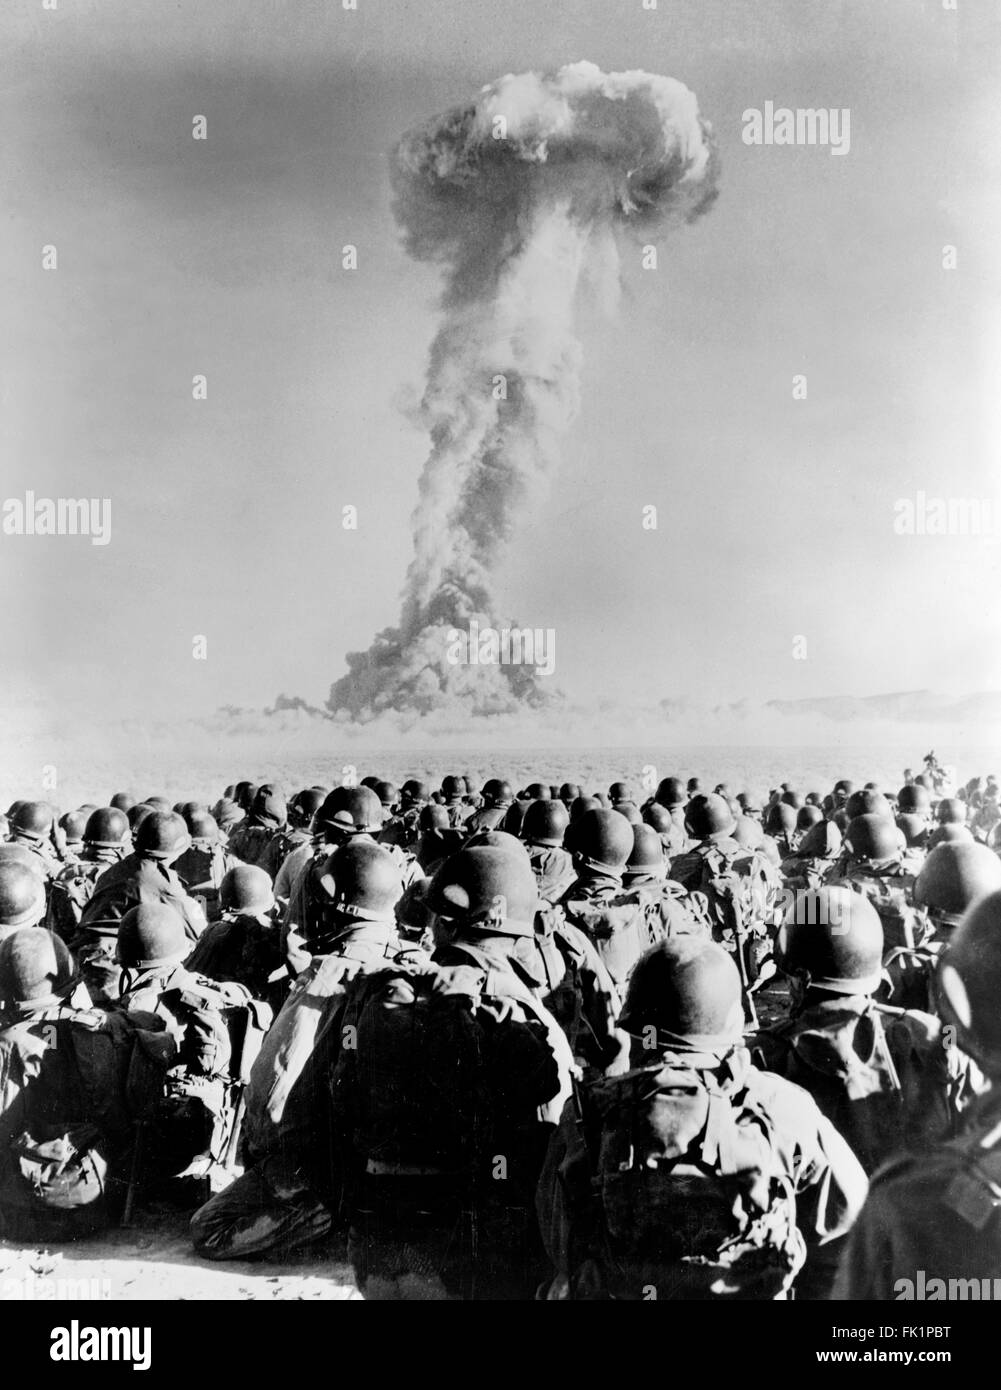 Nukleare Explosion. Truppen aus 11. AB Division vor ein Atompilz aus einem Atomtest Explosion in flache Franzose, Nevada National Security Site, Nevada, USA im November 1951. Stockfoto